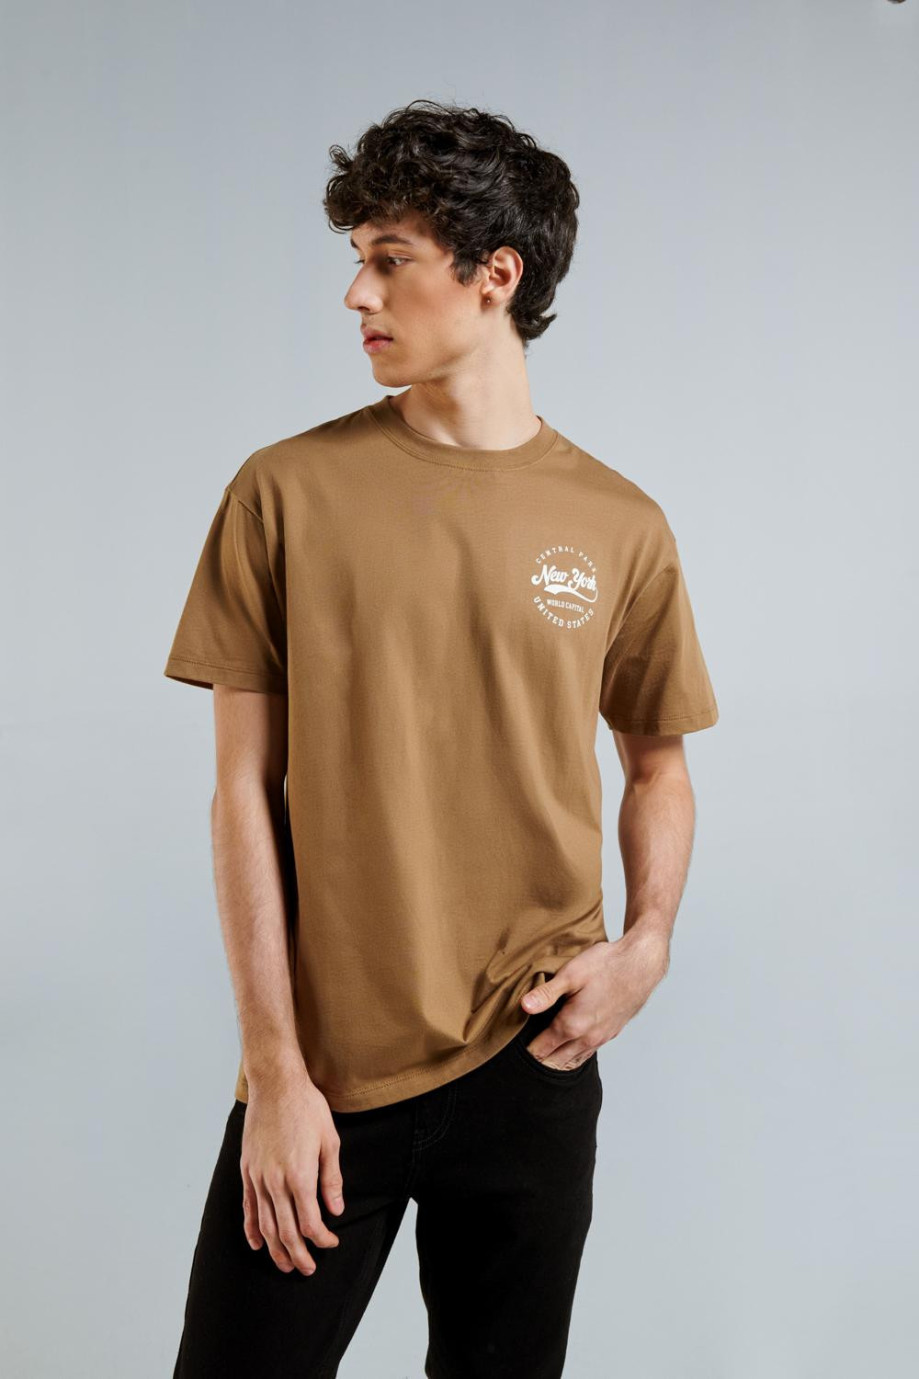 Camiseta café clara con manga corta y diseño college